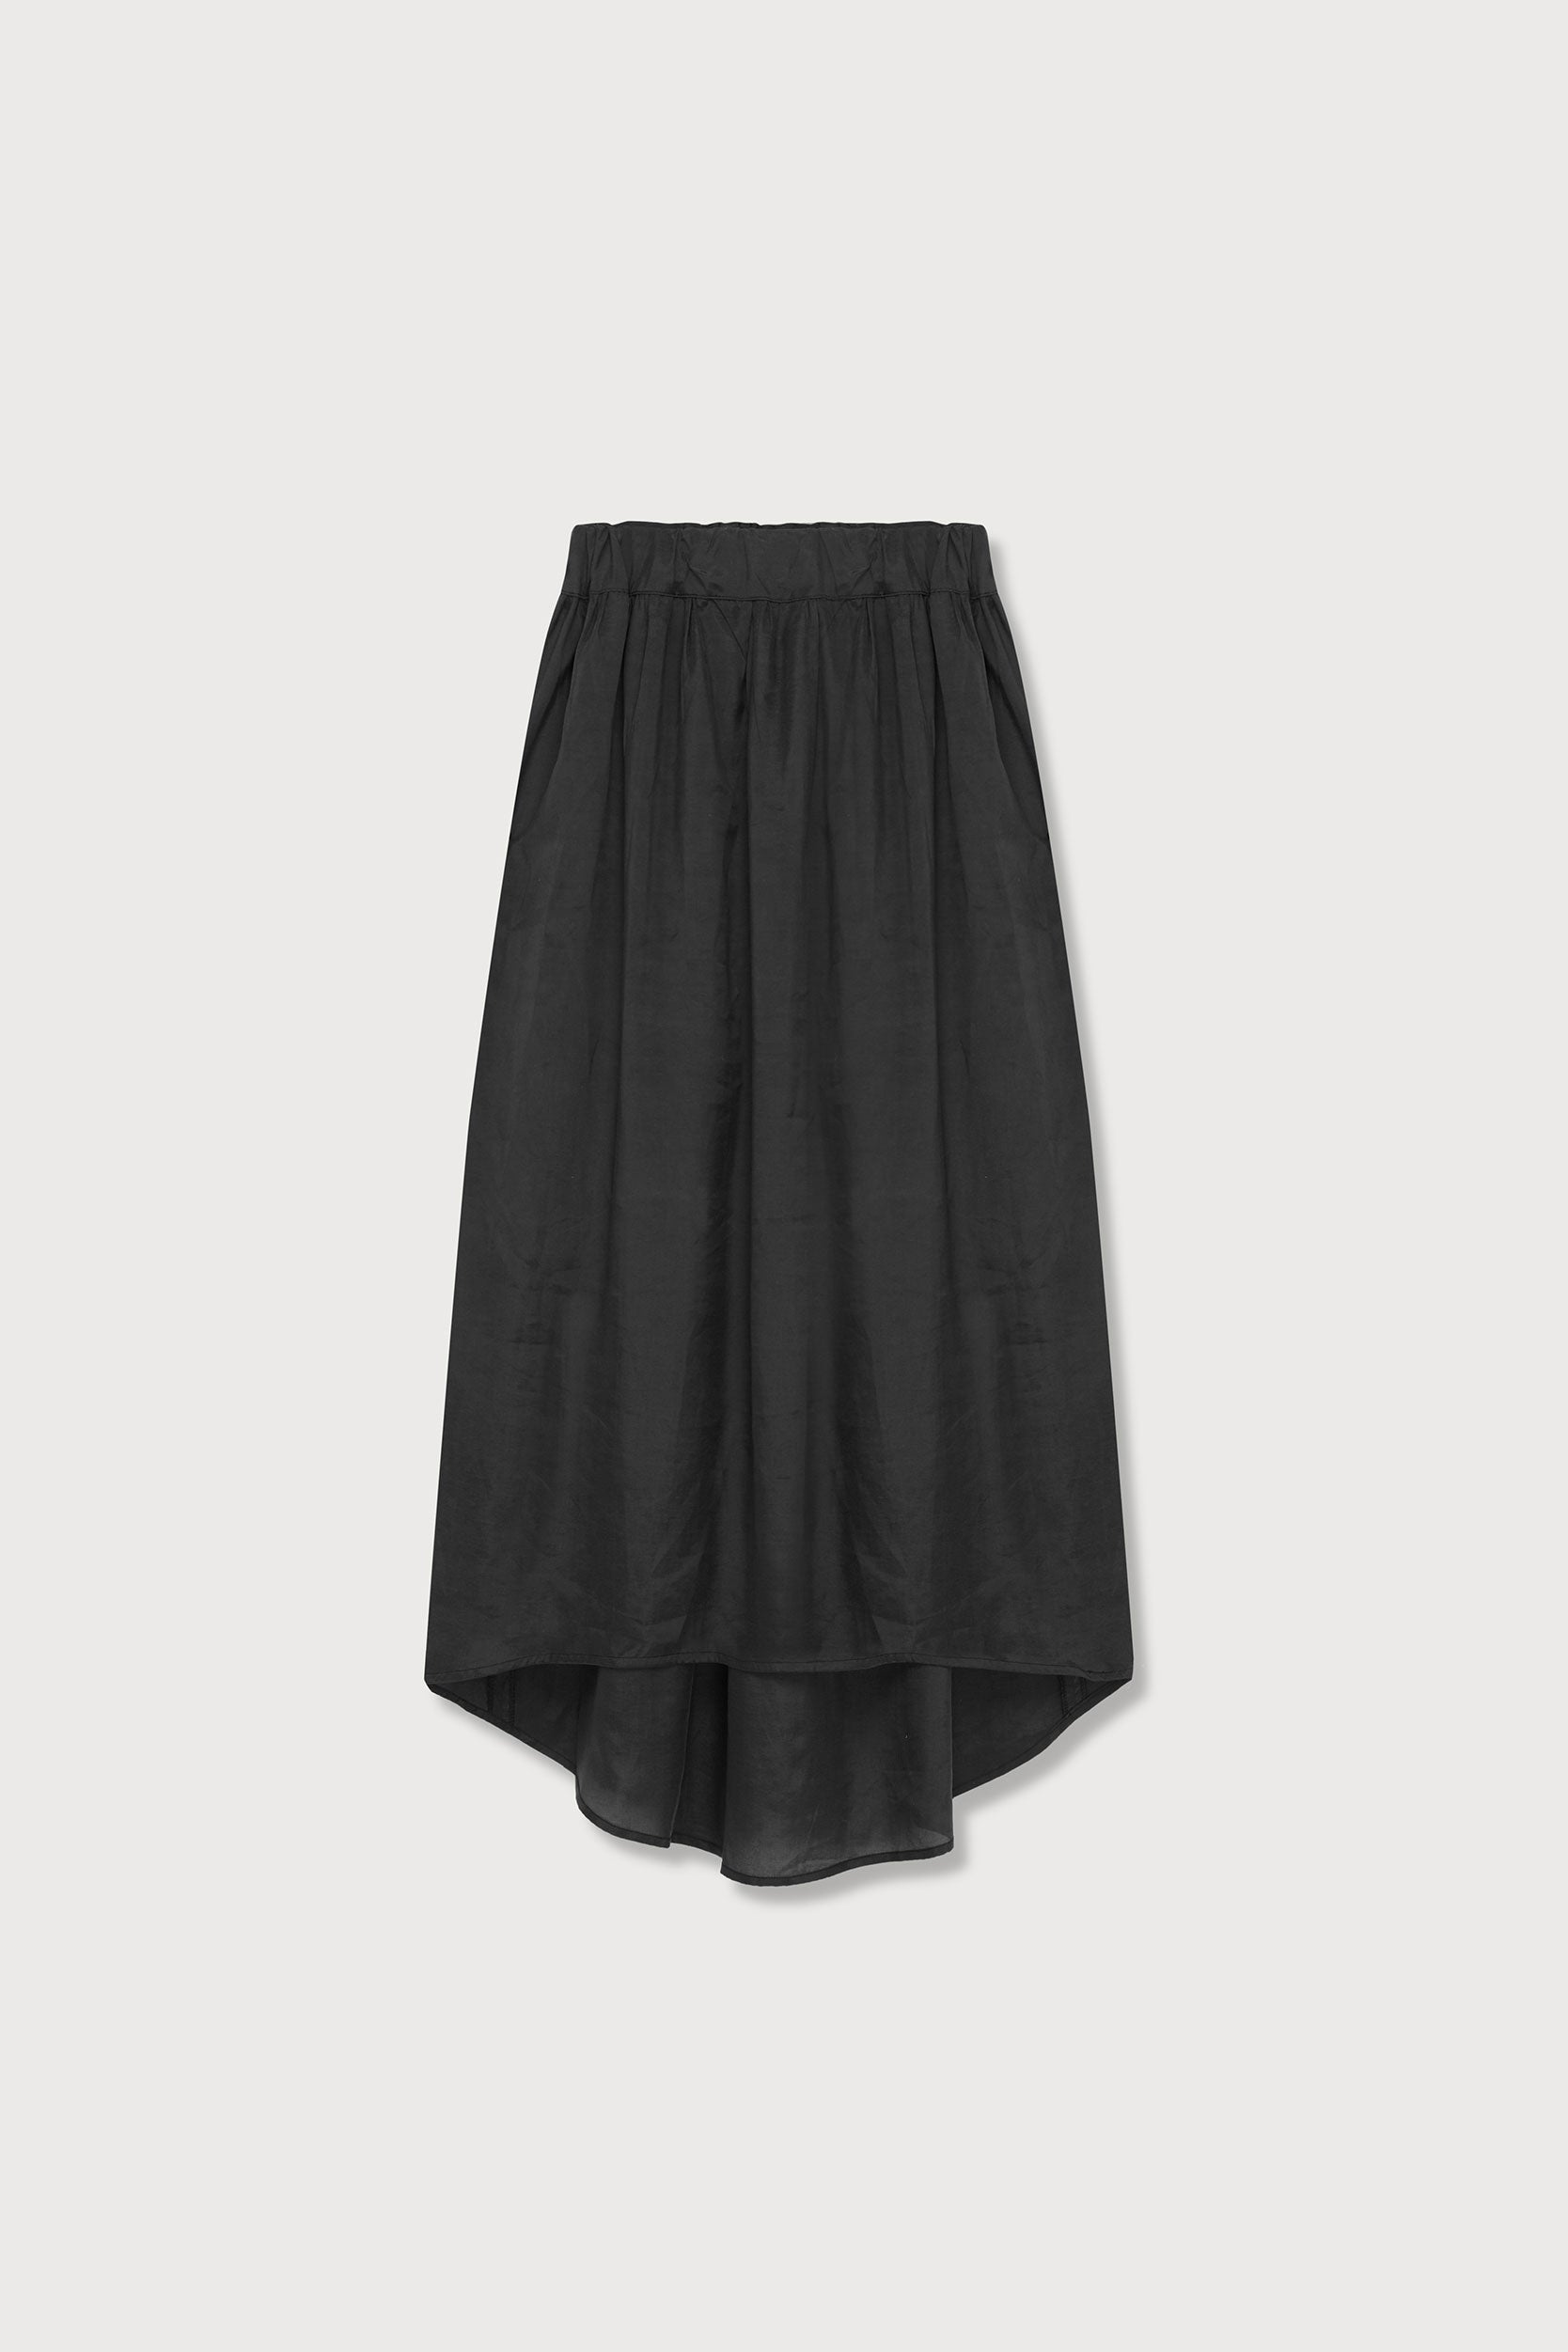 A.BCH A.22 Black Tencel Lounge Skirt